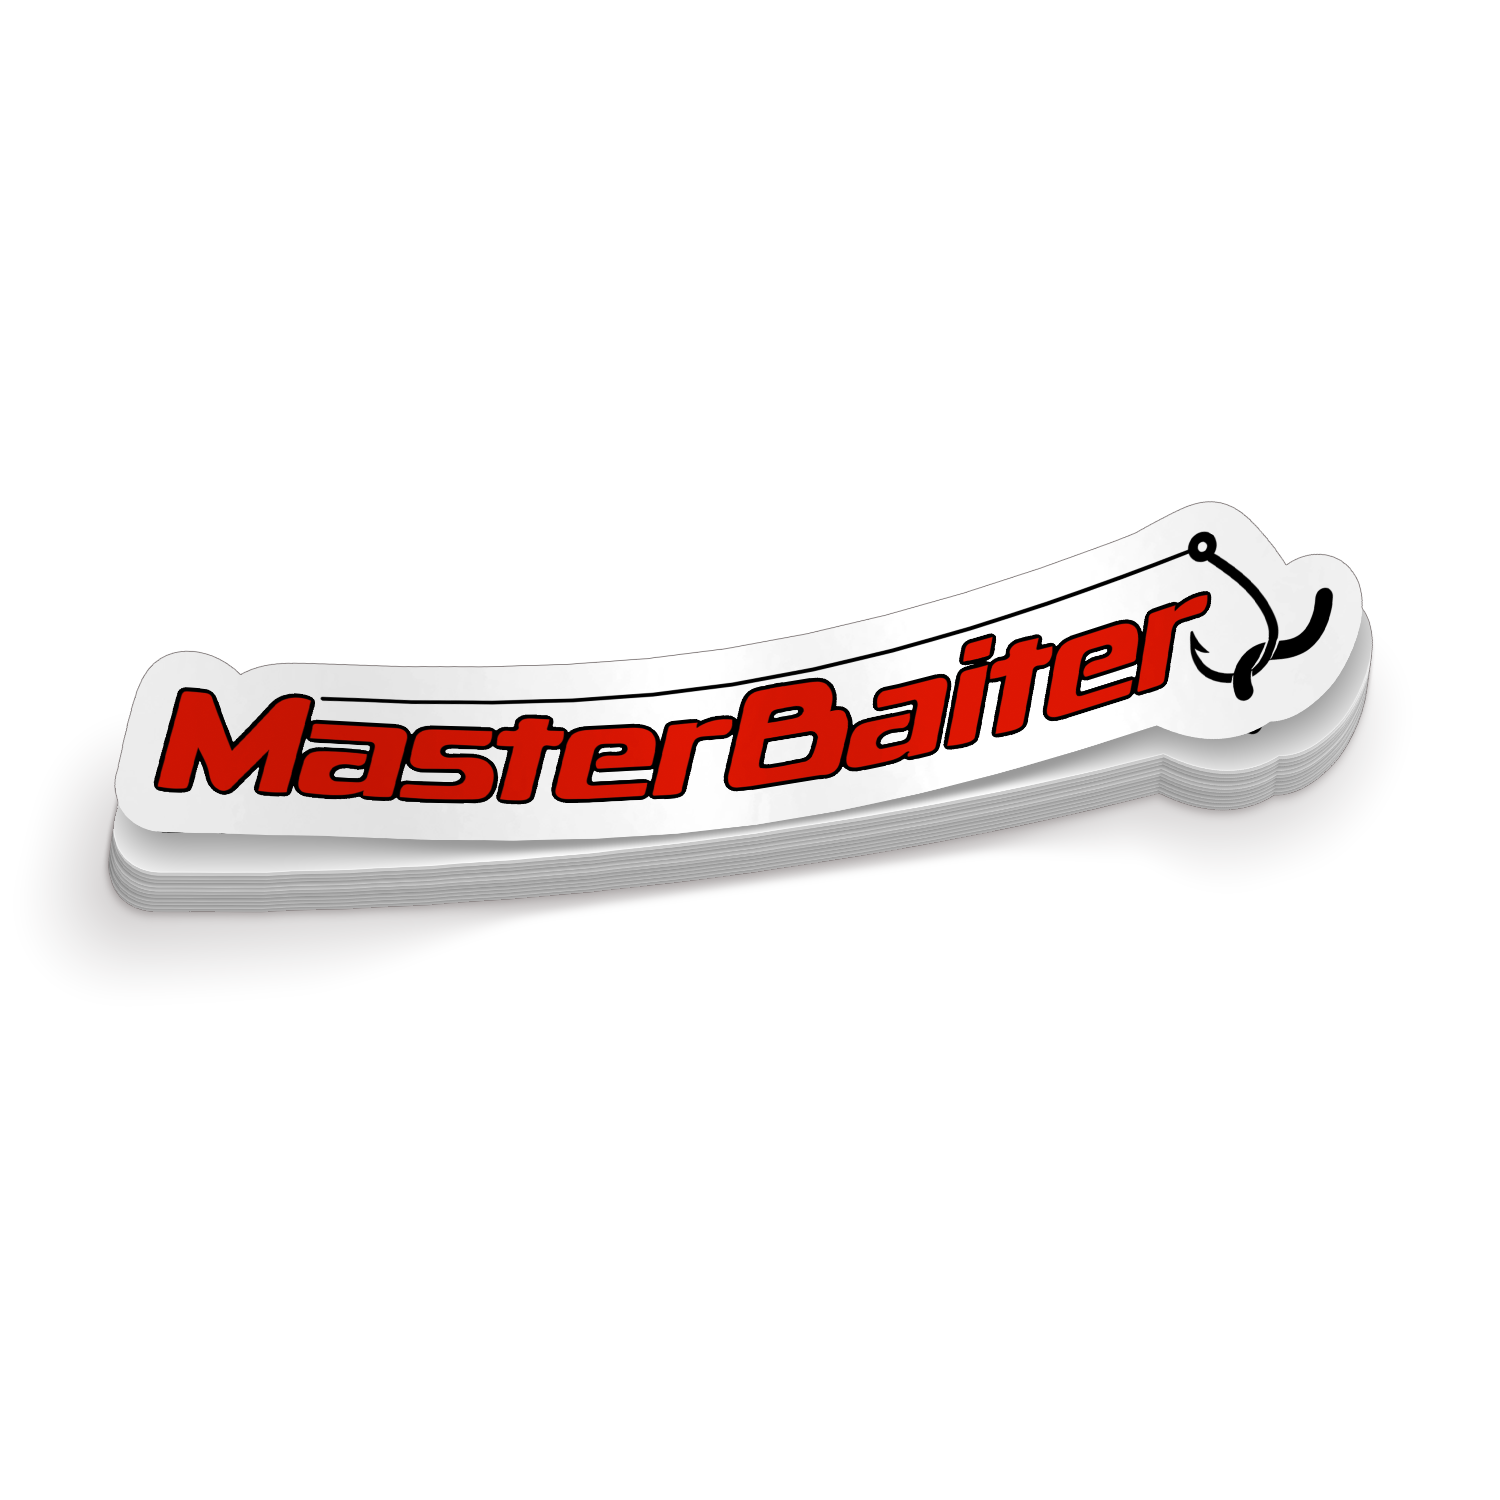 Master Baiter Fishing Sticker – Buy Stickers Here